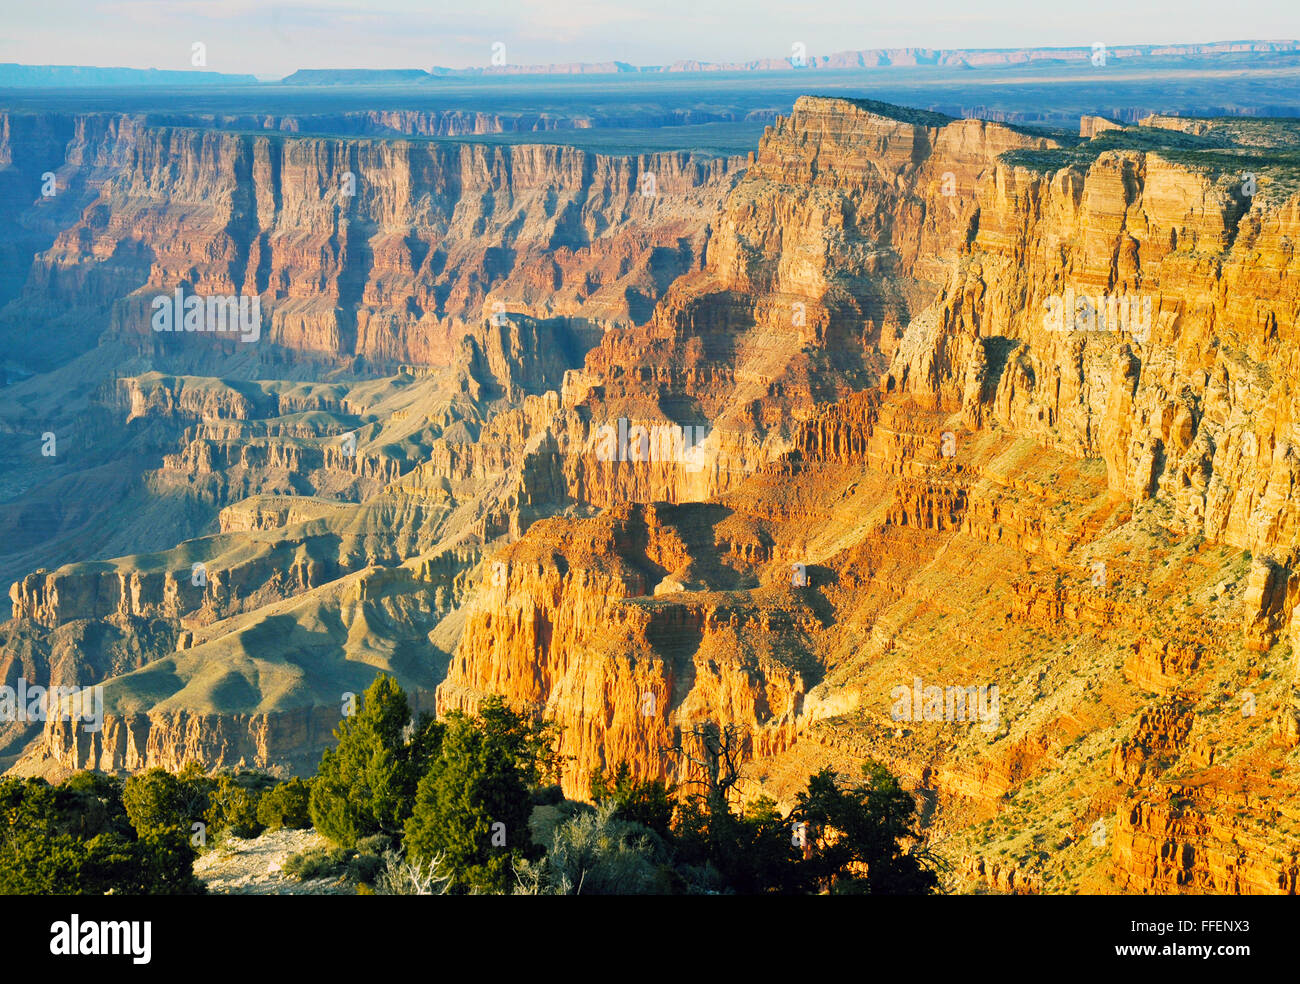 Grand Canyon est un canyon à parois abruptes creusées par la rivière Colorado dans l'Arizona. Habitée par des Indiens des États-Unis, Banque D'Images